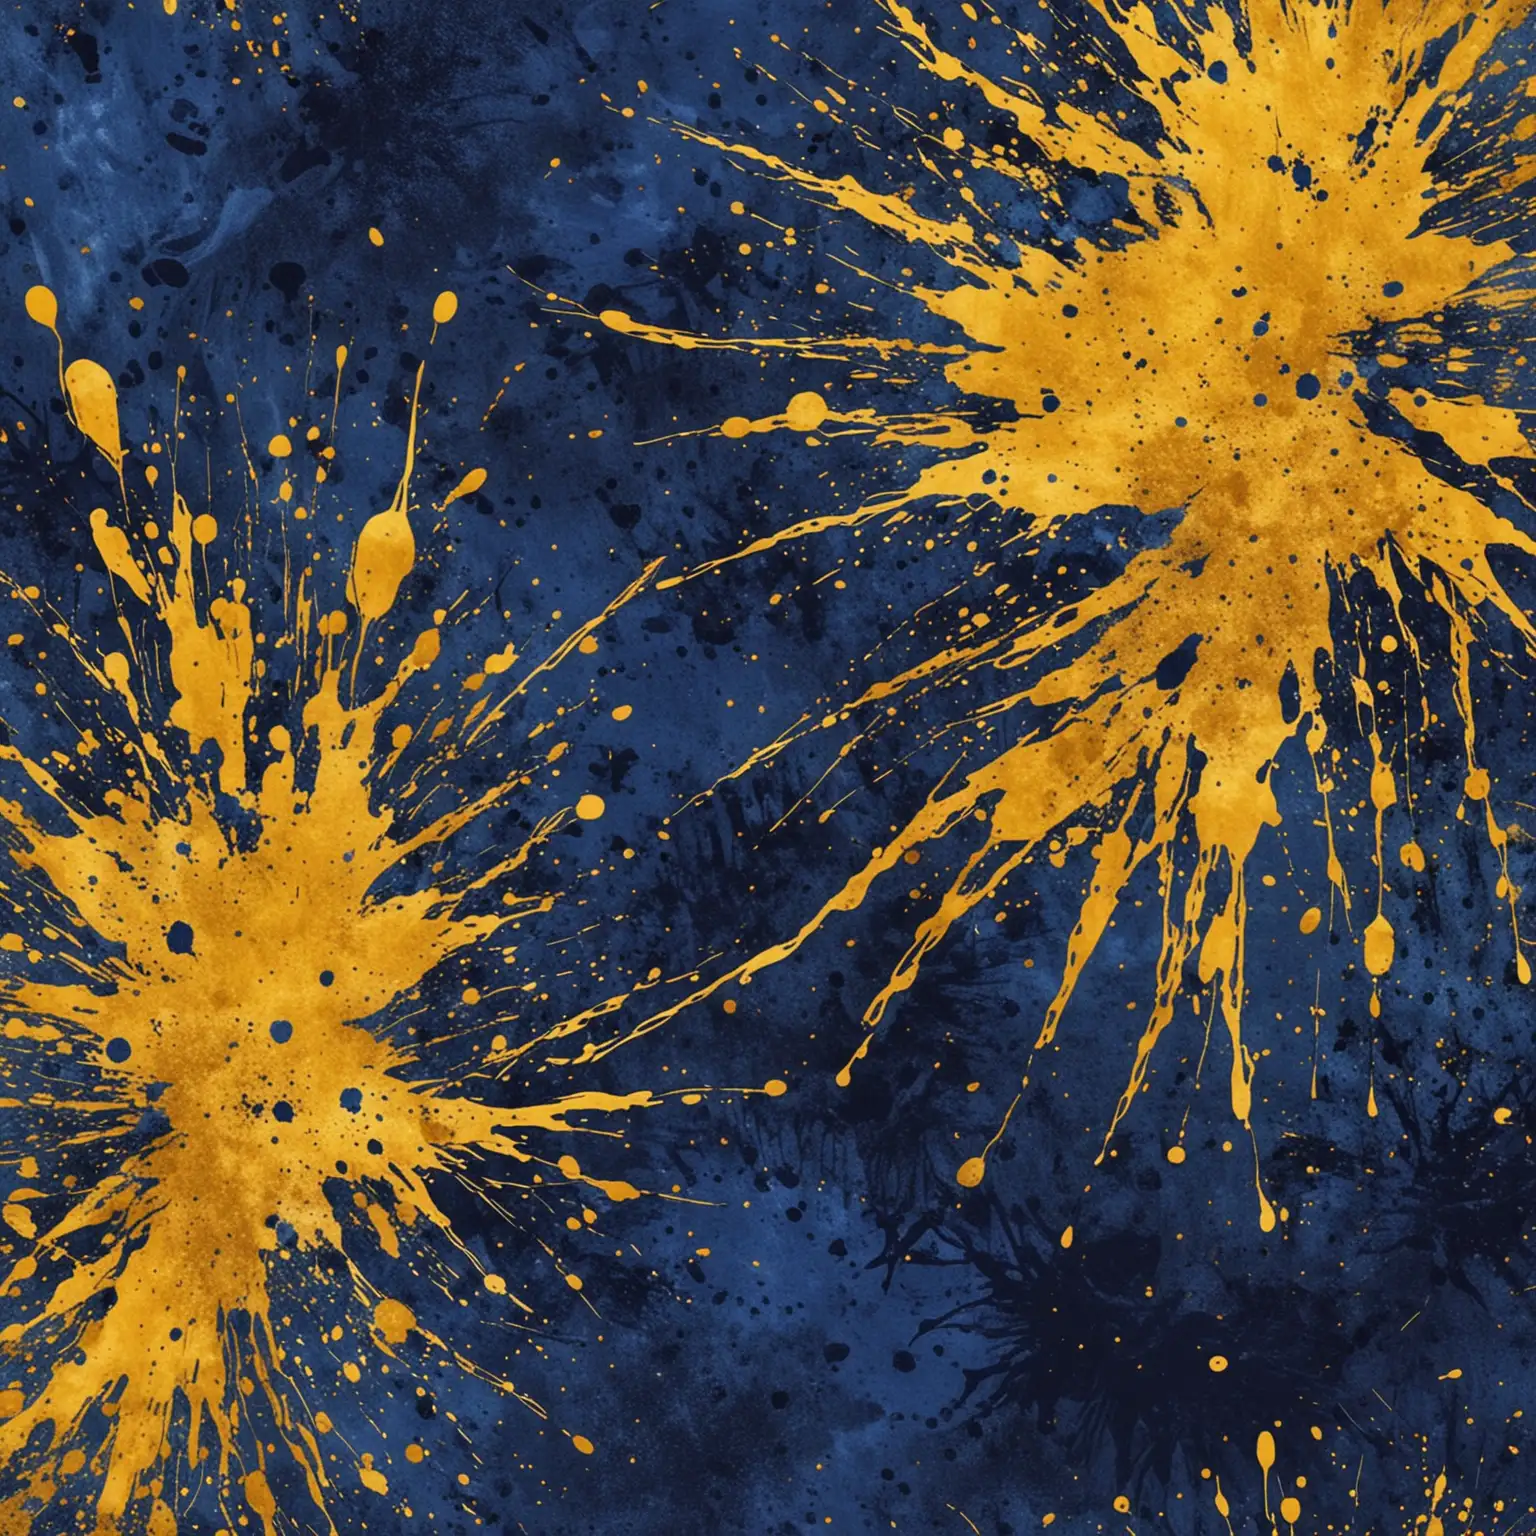 Abstract Mustard and Royal Blue Splatter Digital Art